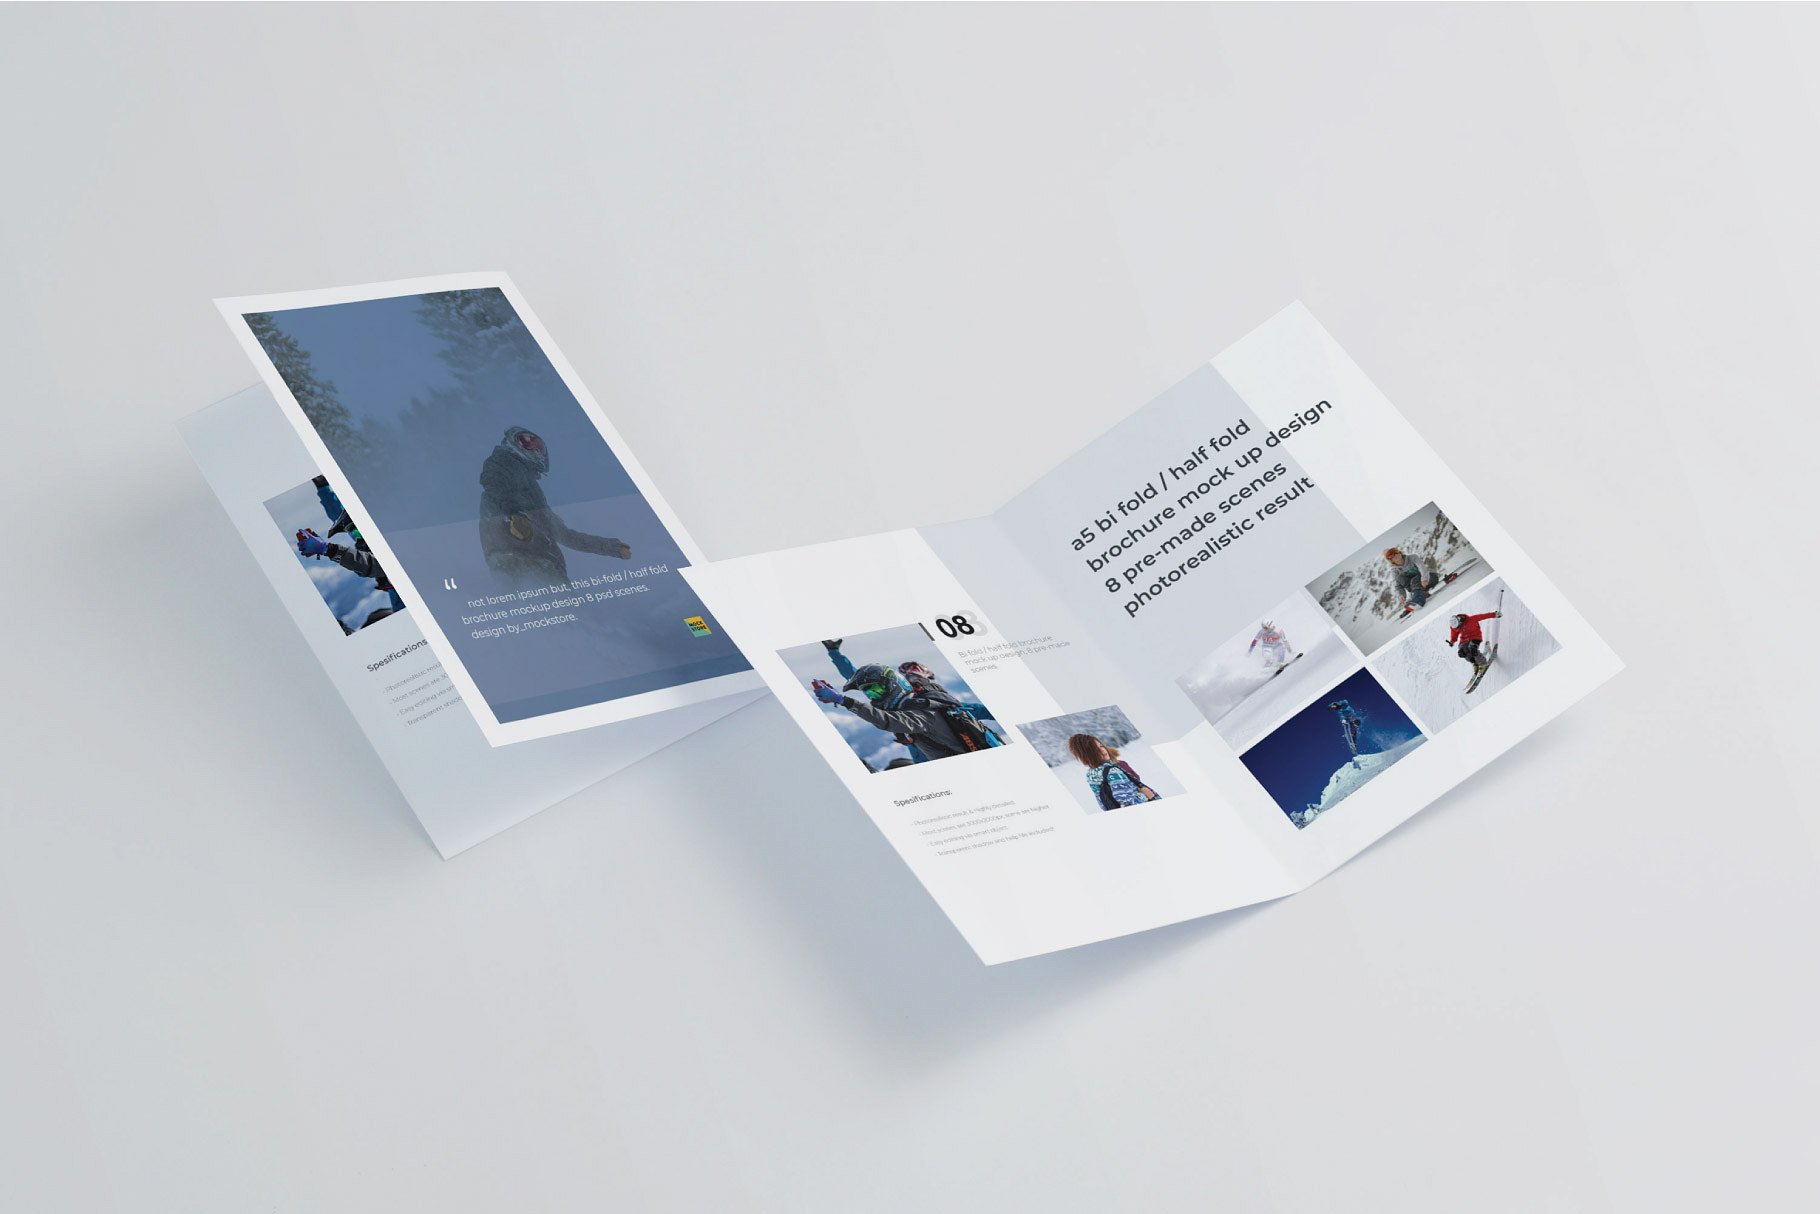 精装画册杂志设计提案展示样机PSD智能贴图模板 A5 Bifold Half-Fold Brochure Mockup插图2